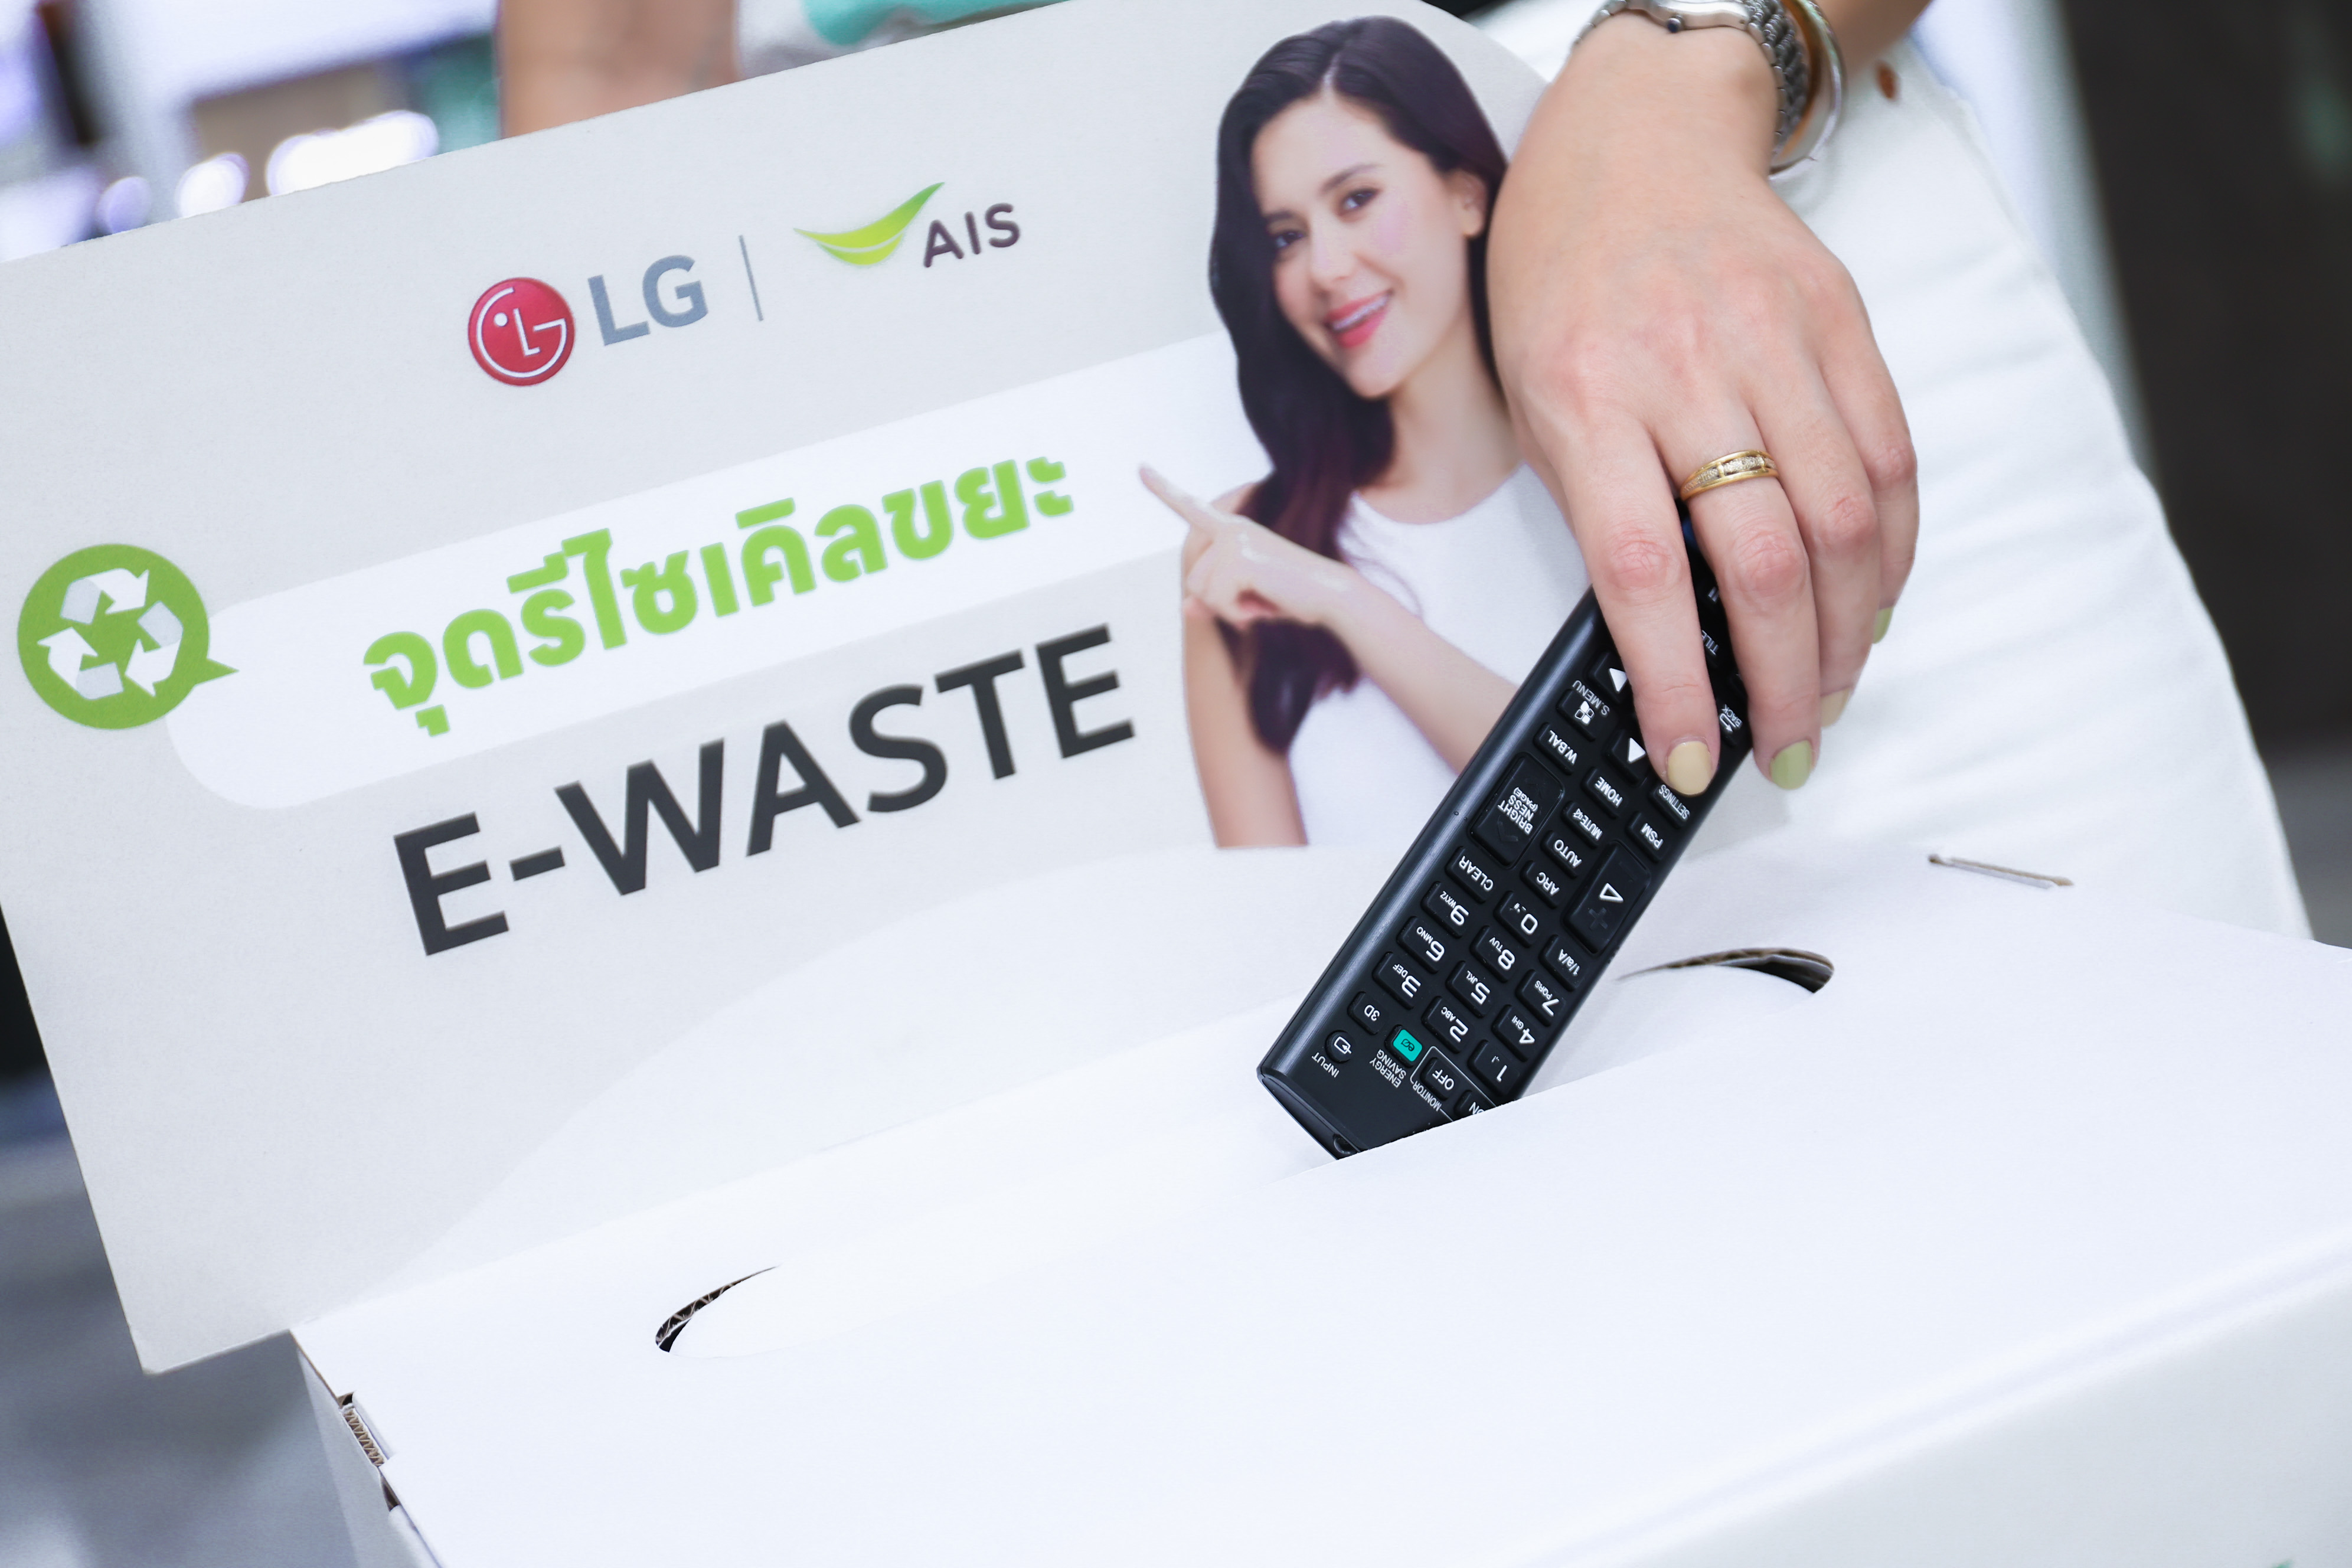 LG เข้าร่วมเป็นพันธมิตรกับเอไอเอส ในโครงการ คนไทยไร้ E-Waste